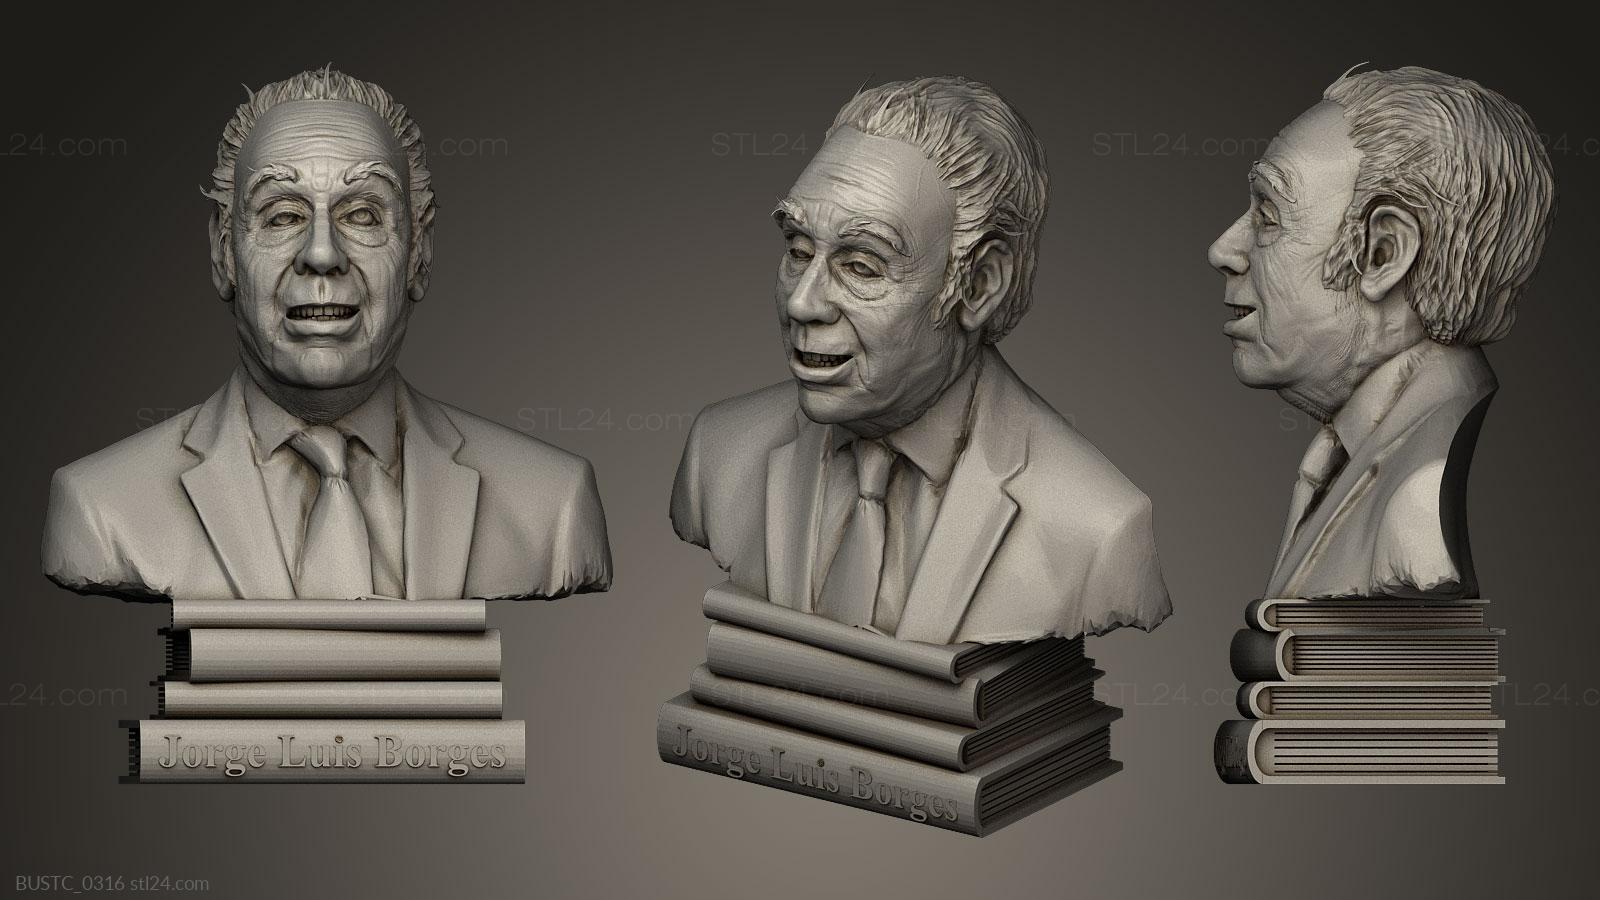 Бюсты и барельефы известных личностей (Хорхе Луис Борхес, BUSTC_0316) 3D модель для ЧПУ станка